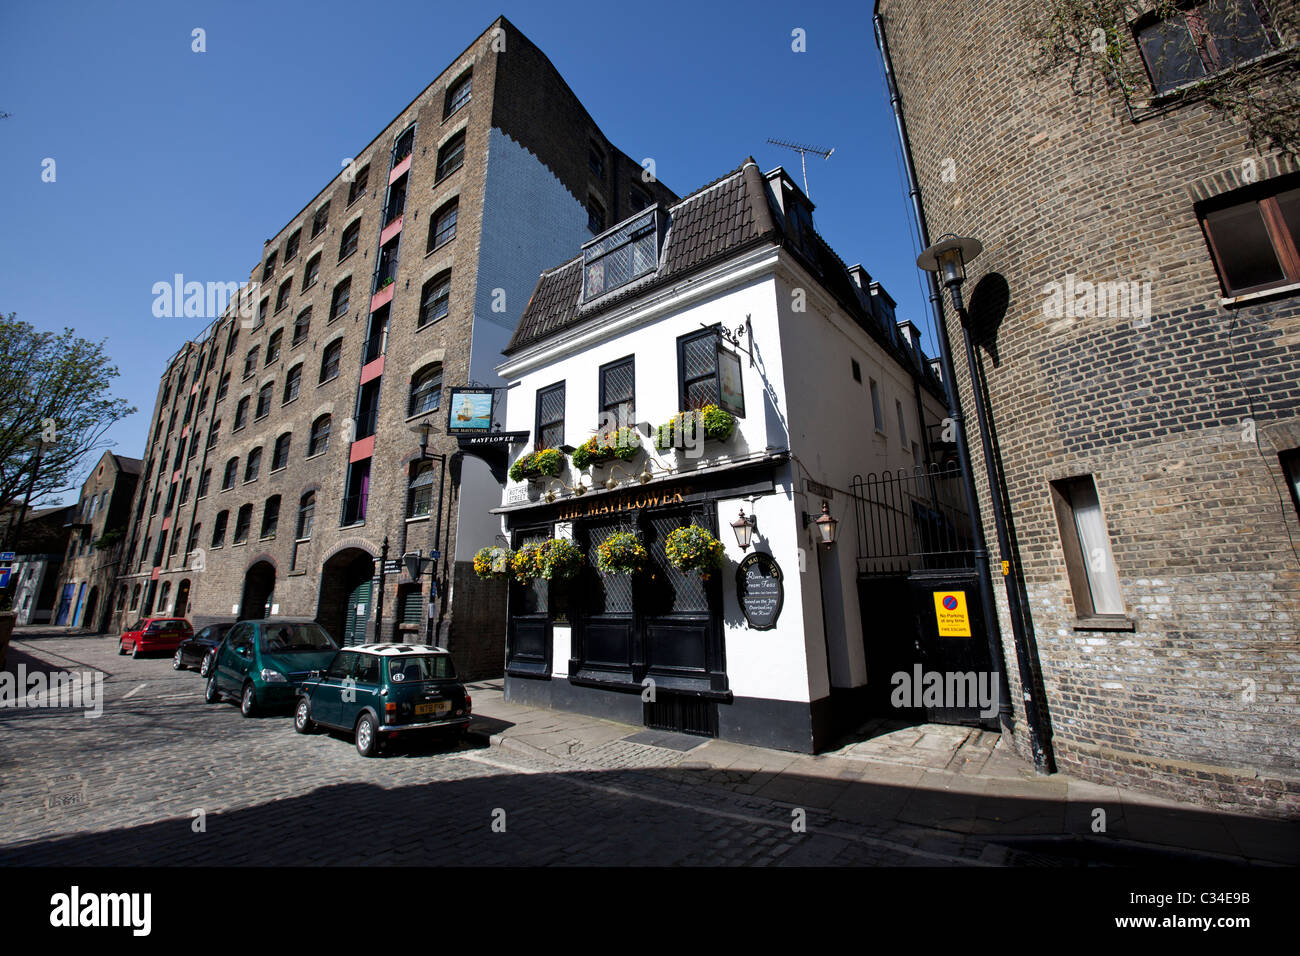 The Mayflower pub, Rotherhithe Street, London, England, UK. Stock Photo